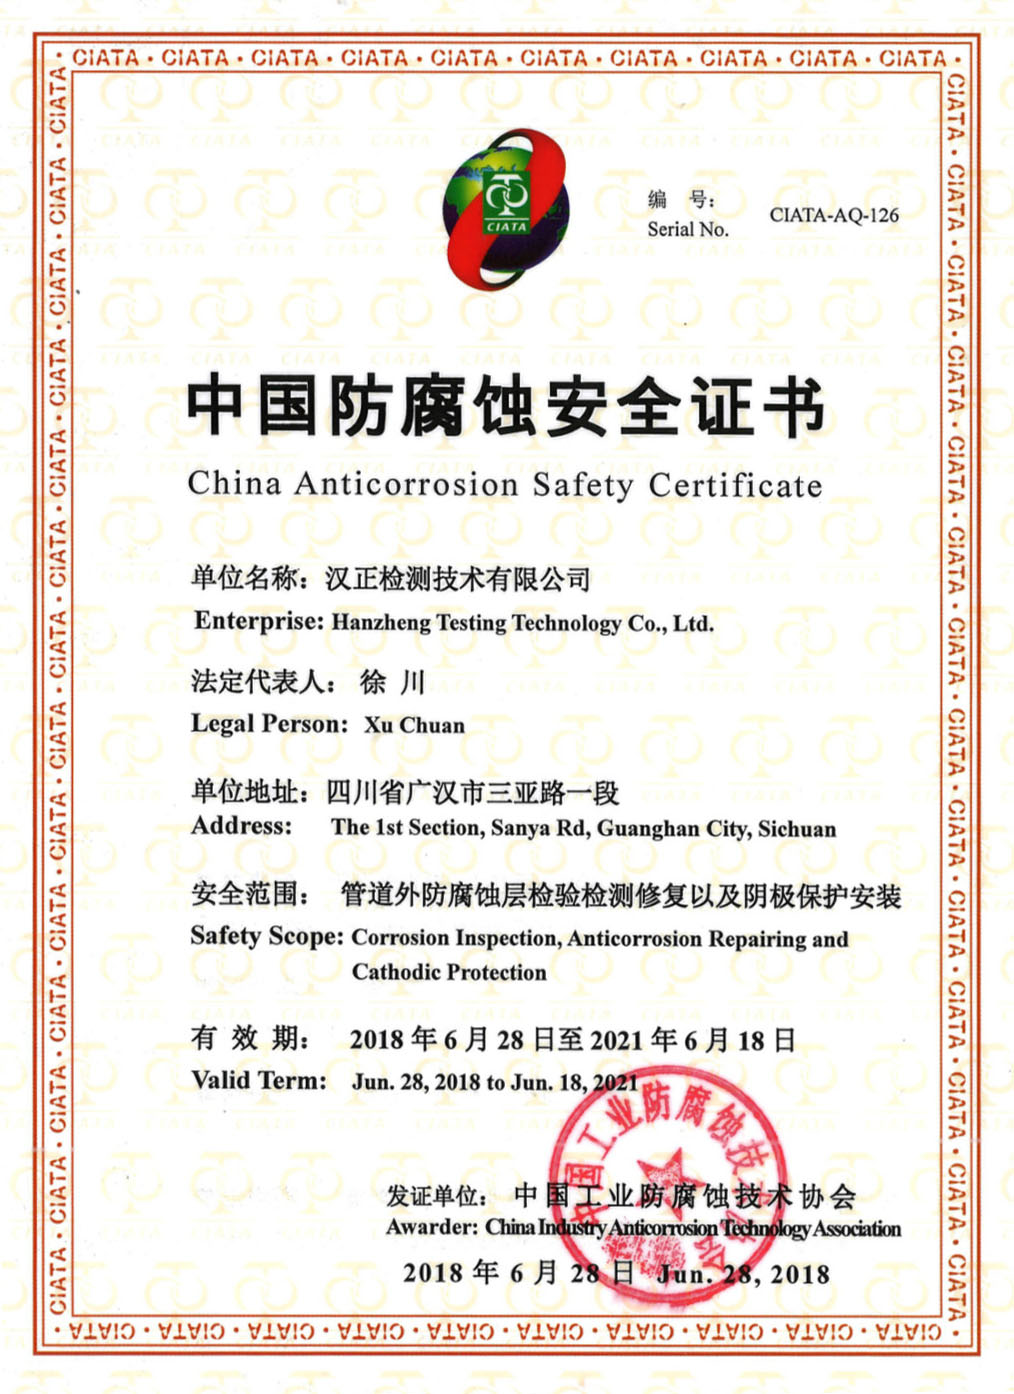 180628中国防腐蚀安全证书_meitu_1.jpg